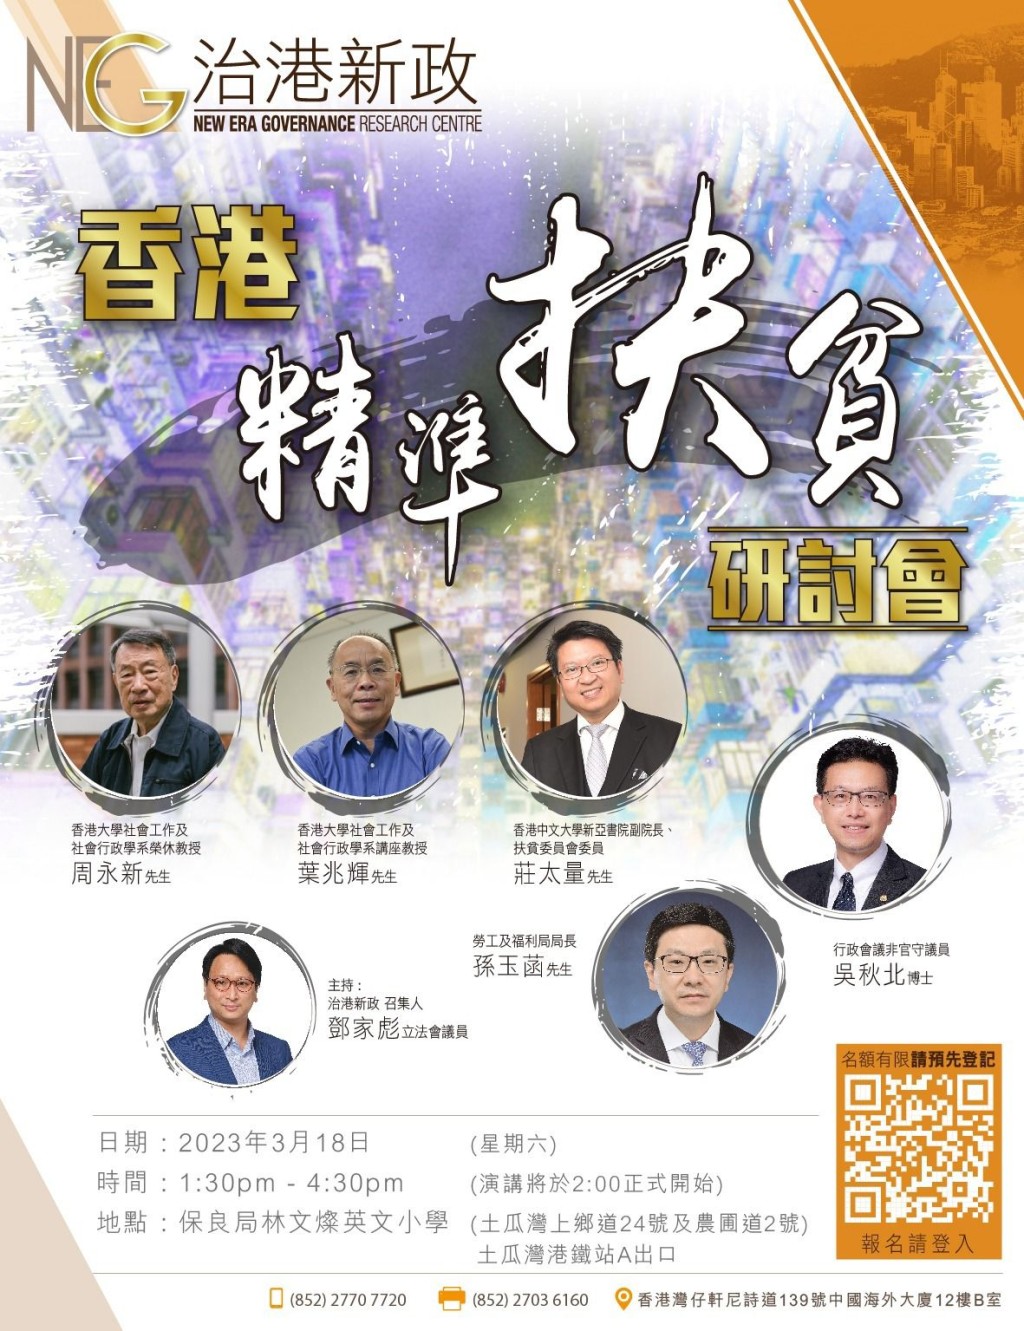 「治港新政」将于3月18日举办「香港精准扶贫研讨会」。